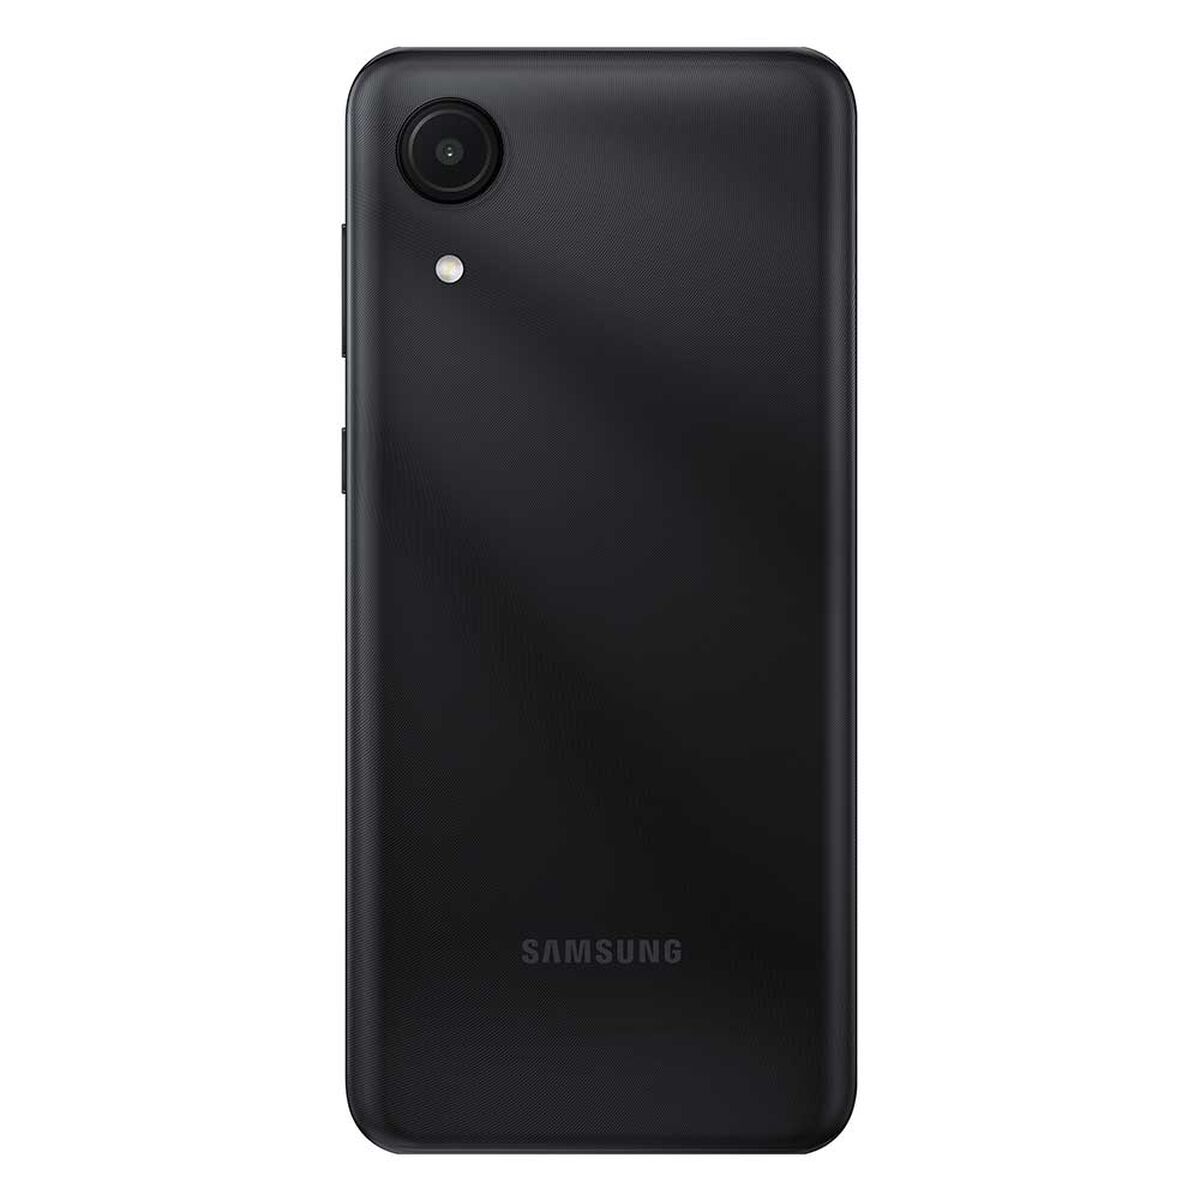 Celular Samsung Galaxy A03 Core 32GB 6,5" Ceramic Black Liberado